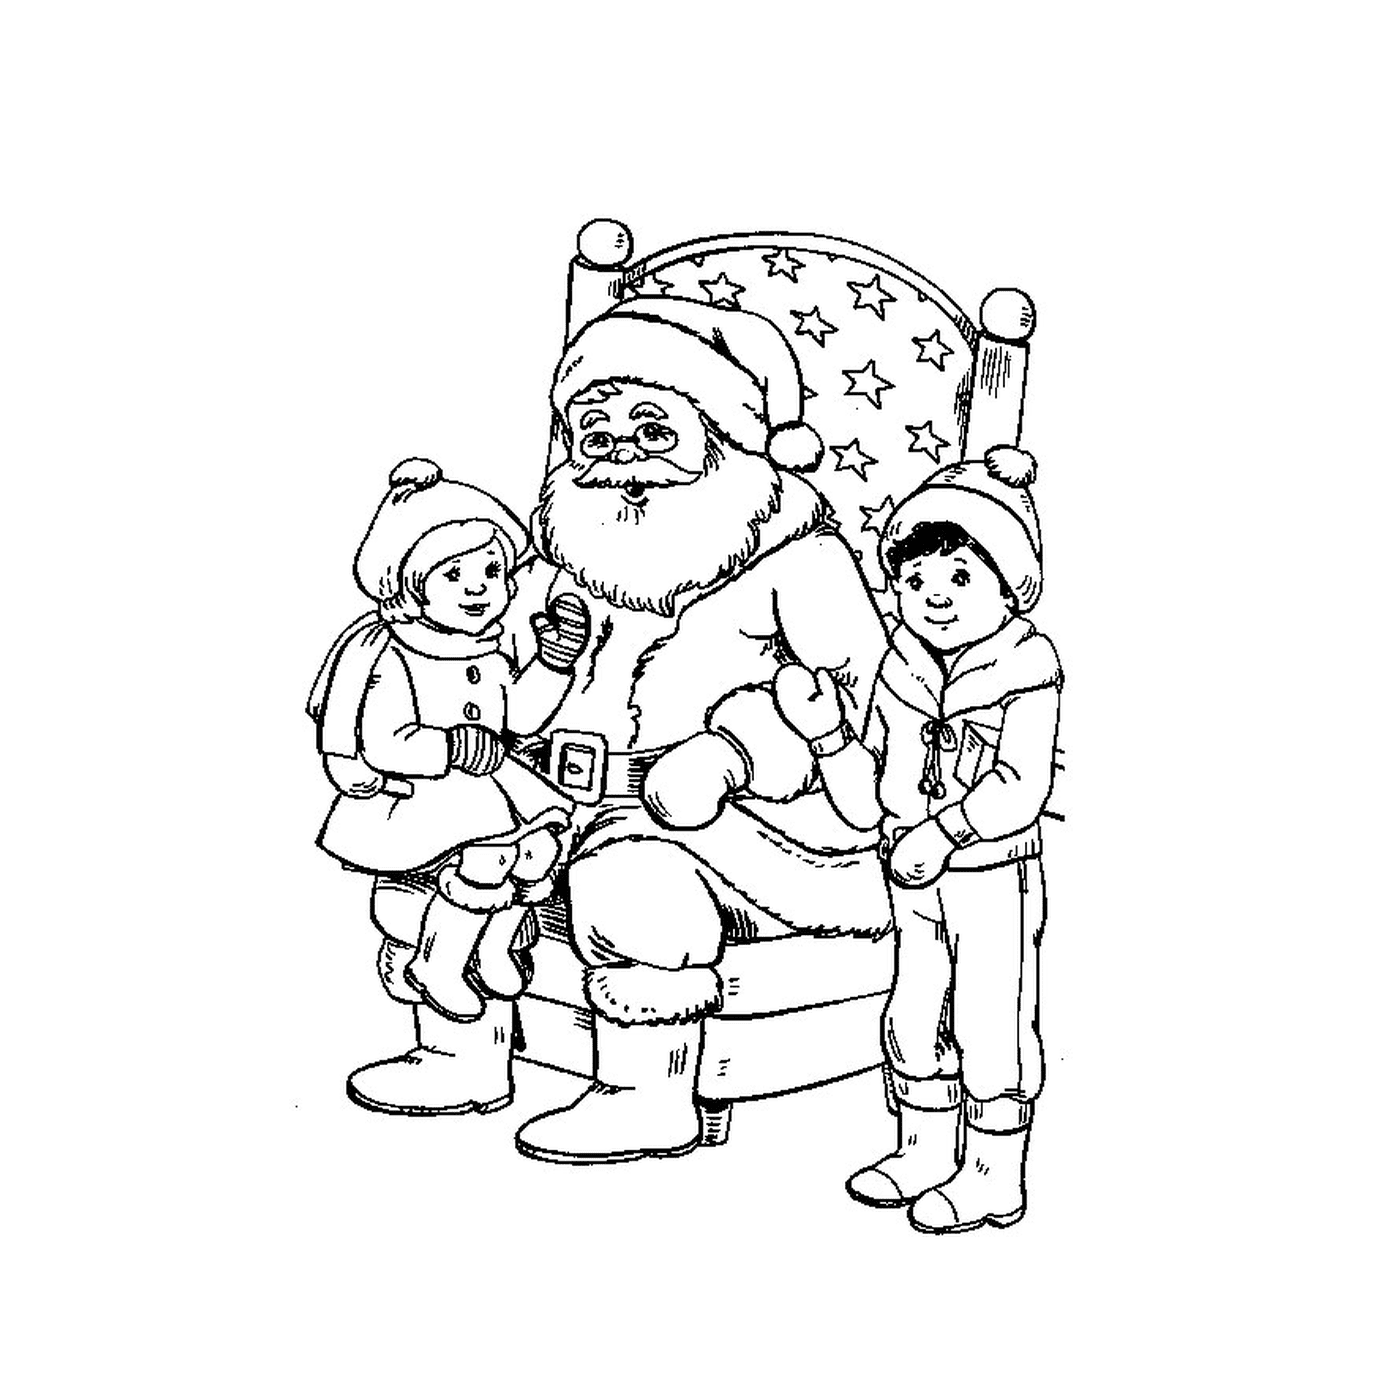  Двое детей с Санта-Клаусом 